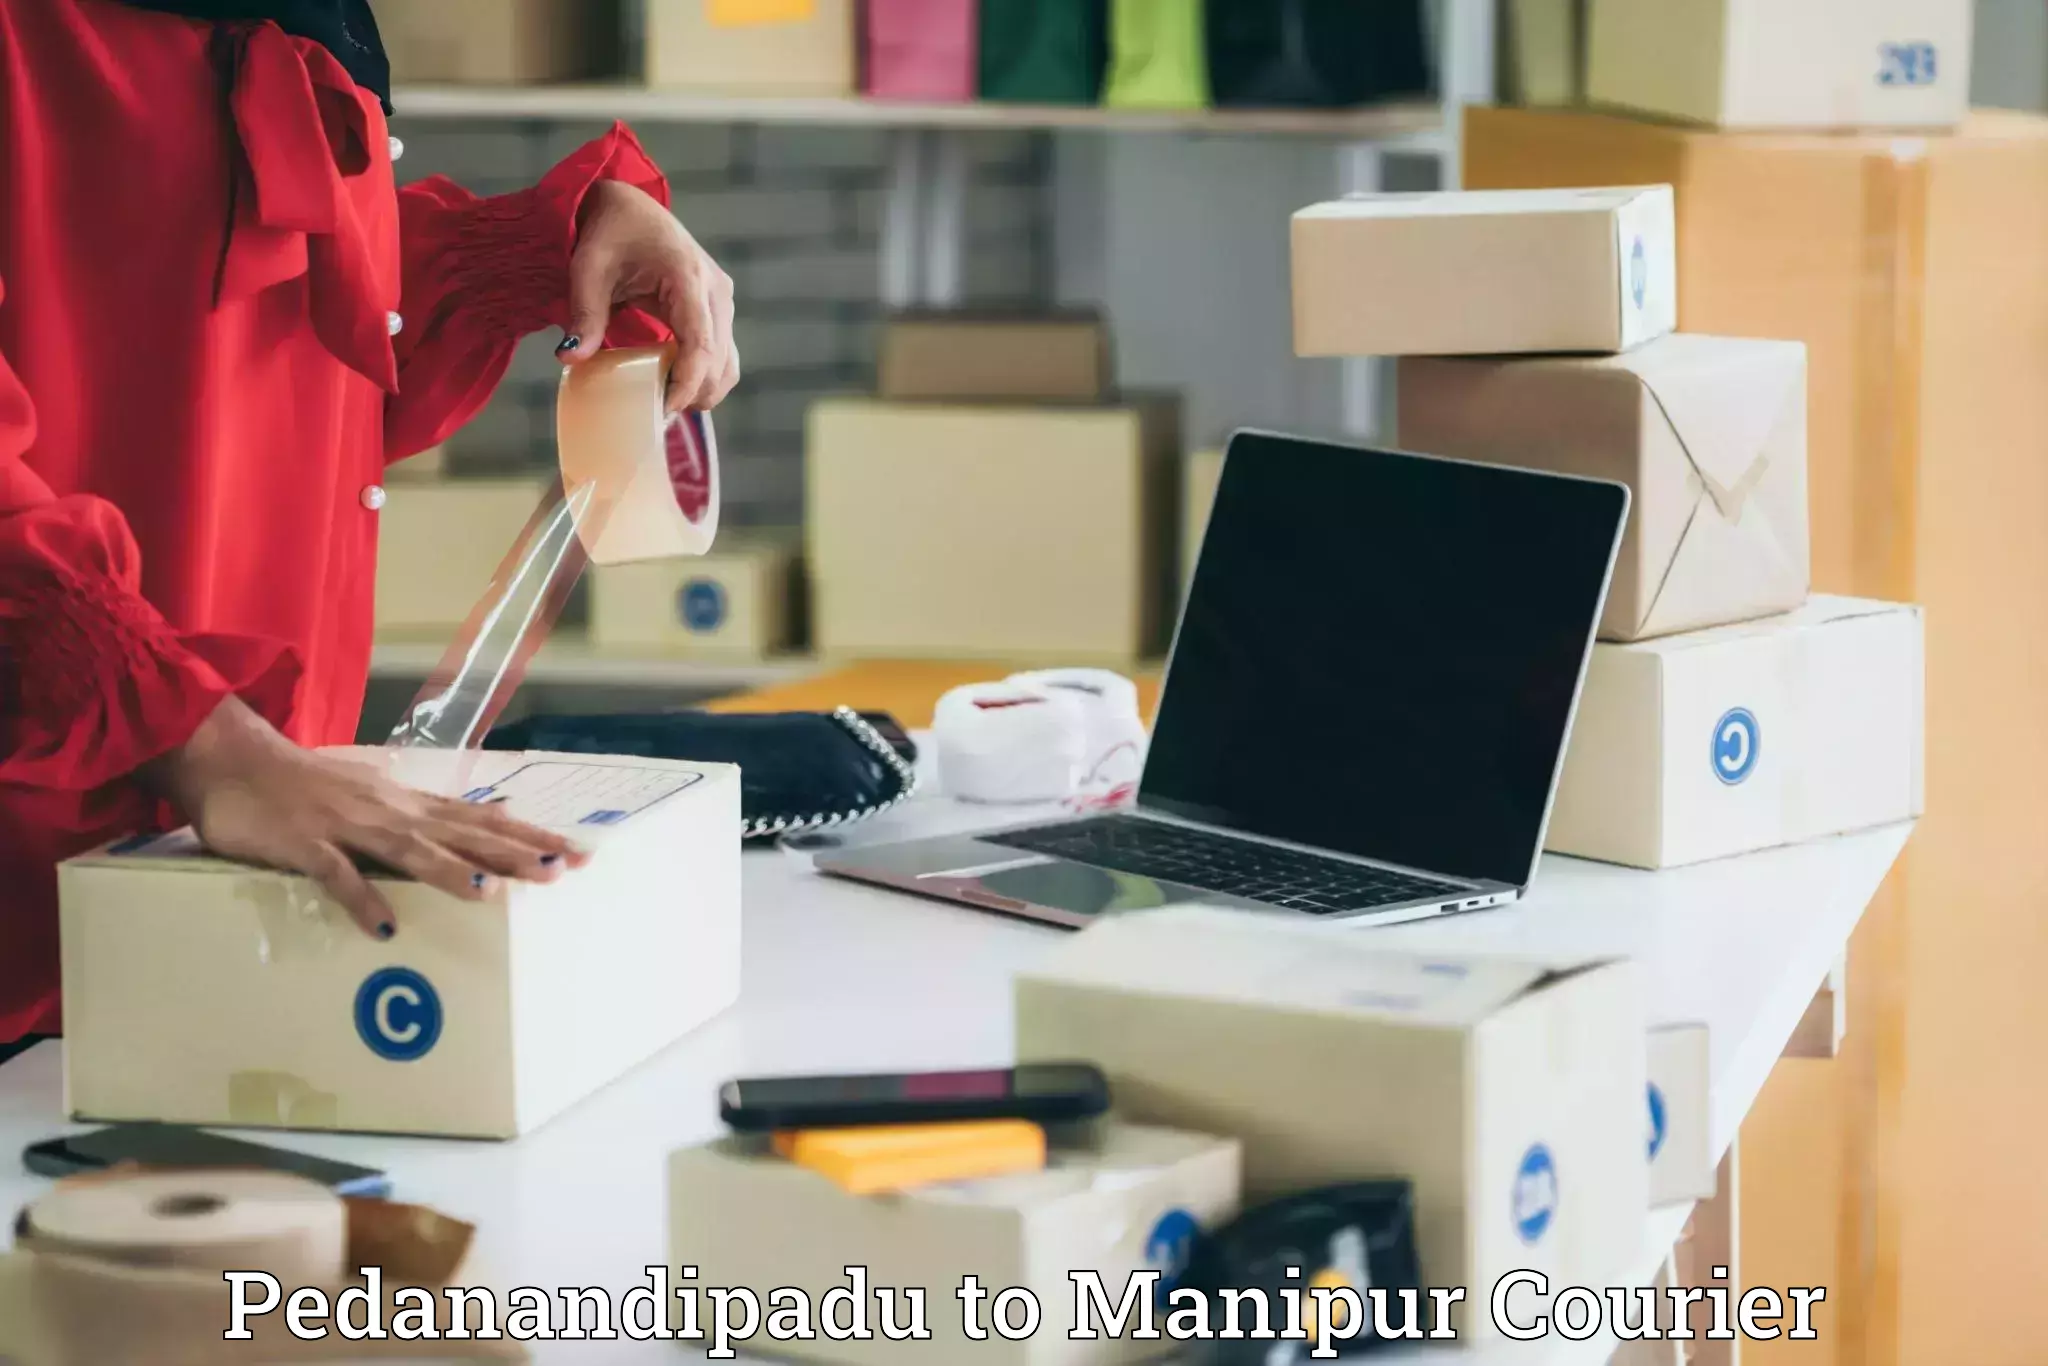 Modern courier technology Pedanandipadu to Manipur